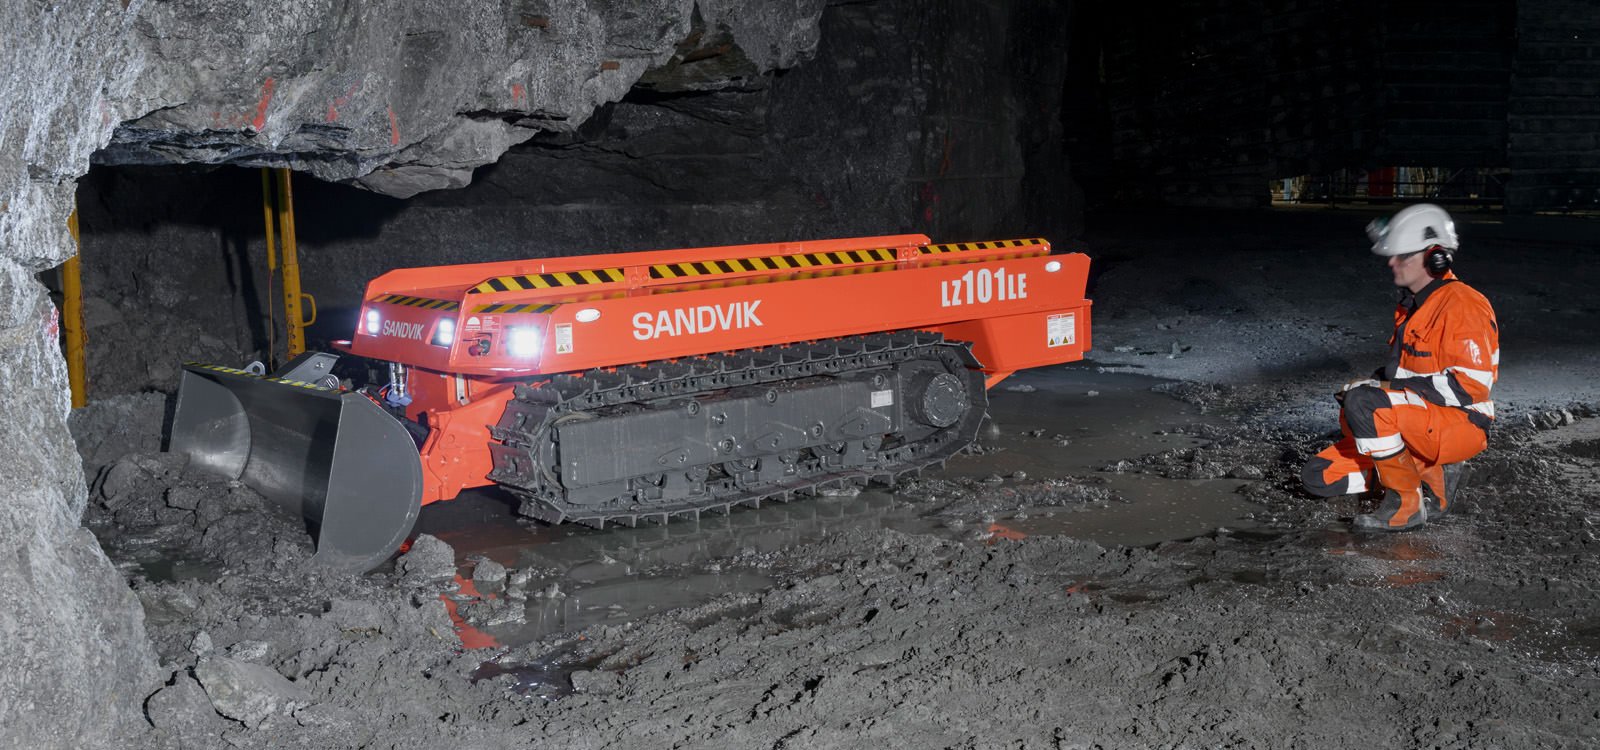 <p>Le Sandvik LZ101LE est télécommandé, ce qui permet aux opérateurs de travailler à distance prudente des zones dangereuses et non soutenues de la mine.</p>
